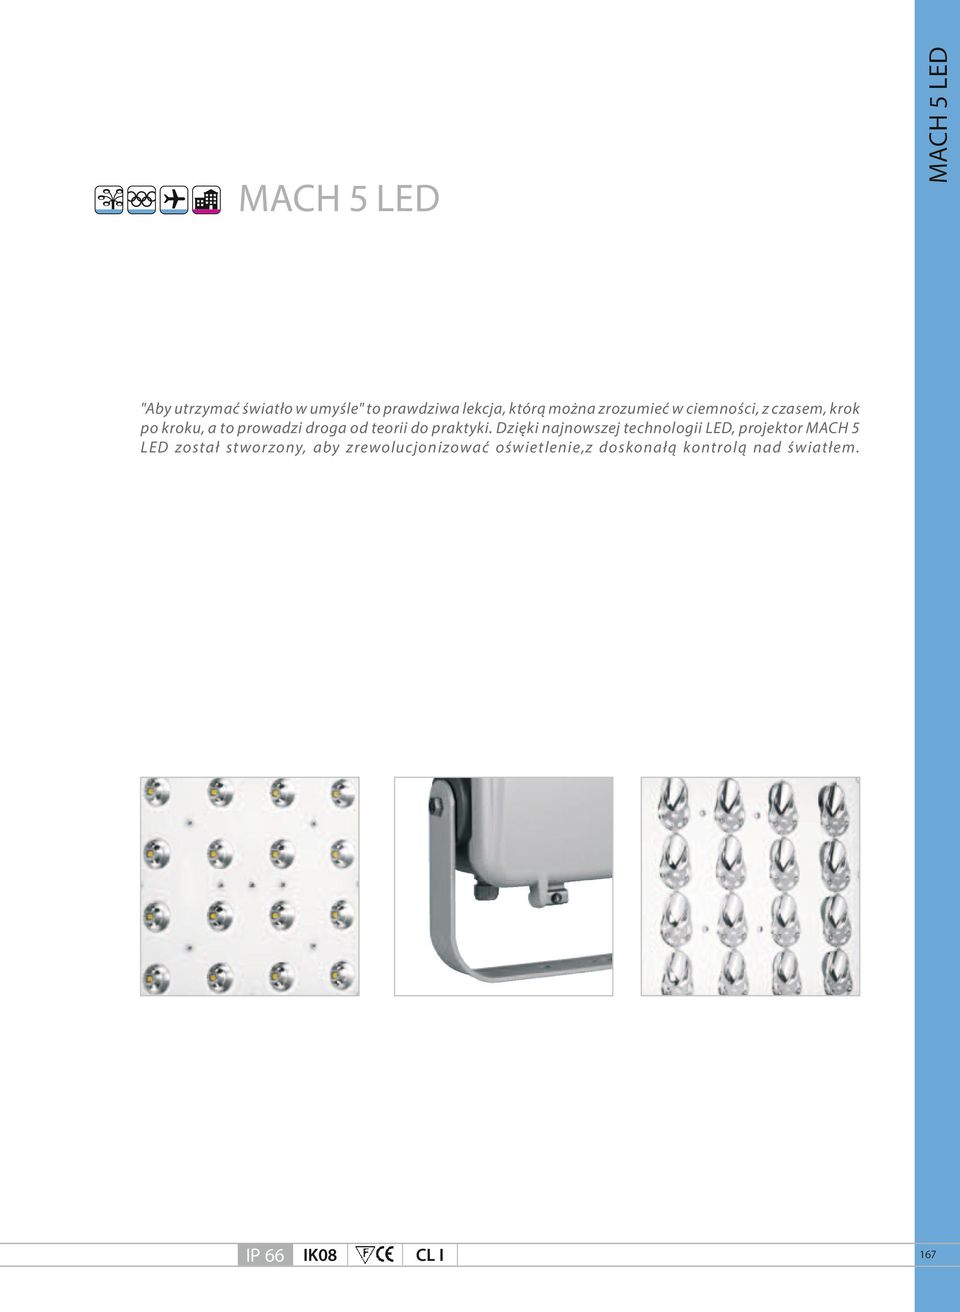 Dzięki najnowszej technologii LED, projektor MACH 5 LED został stworzony, aby